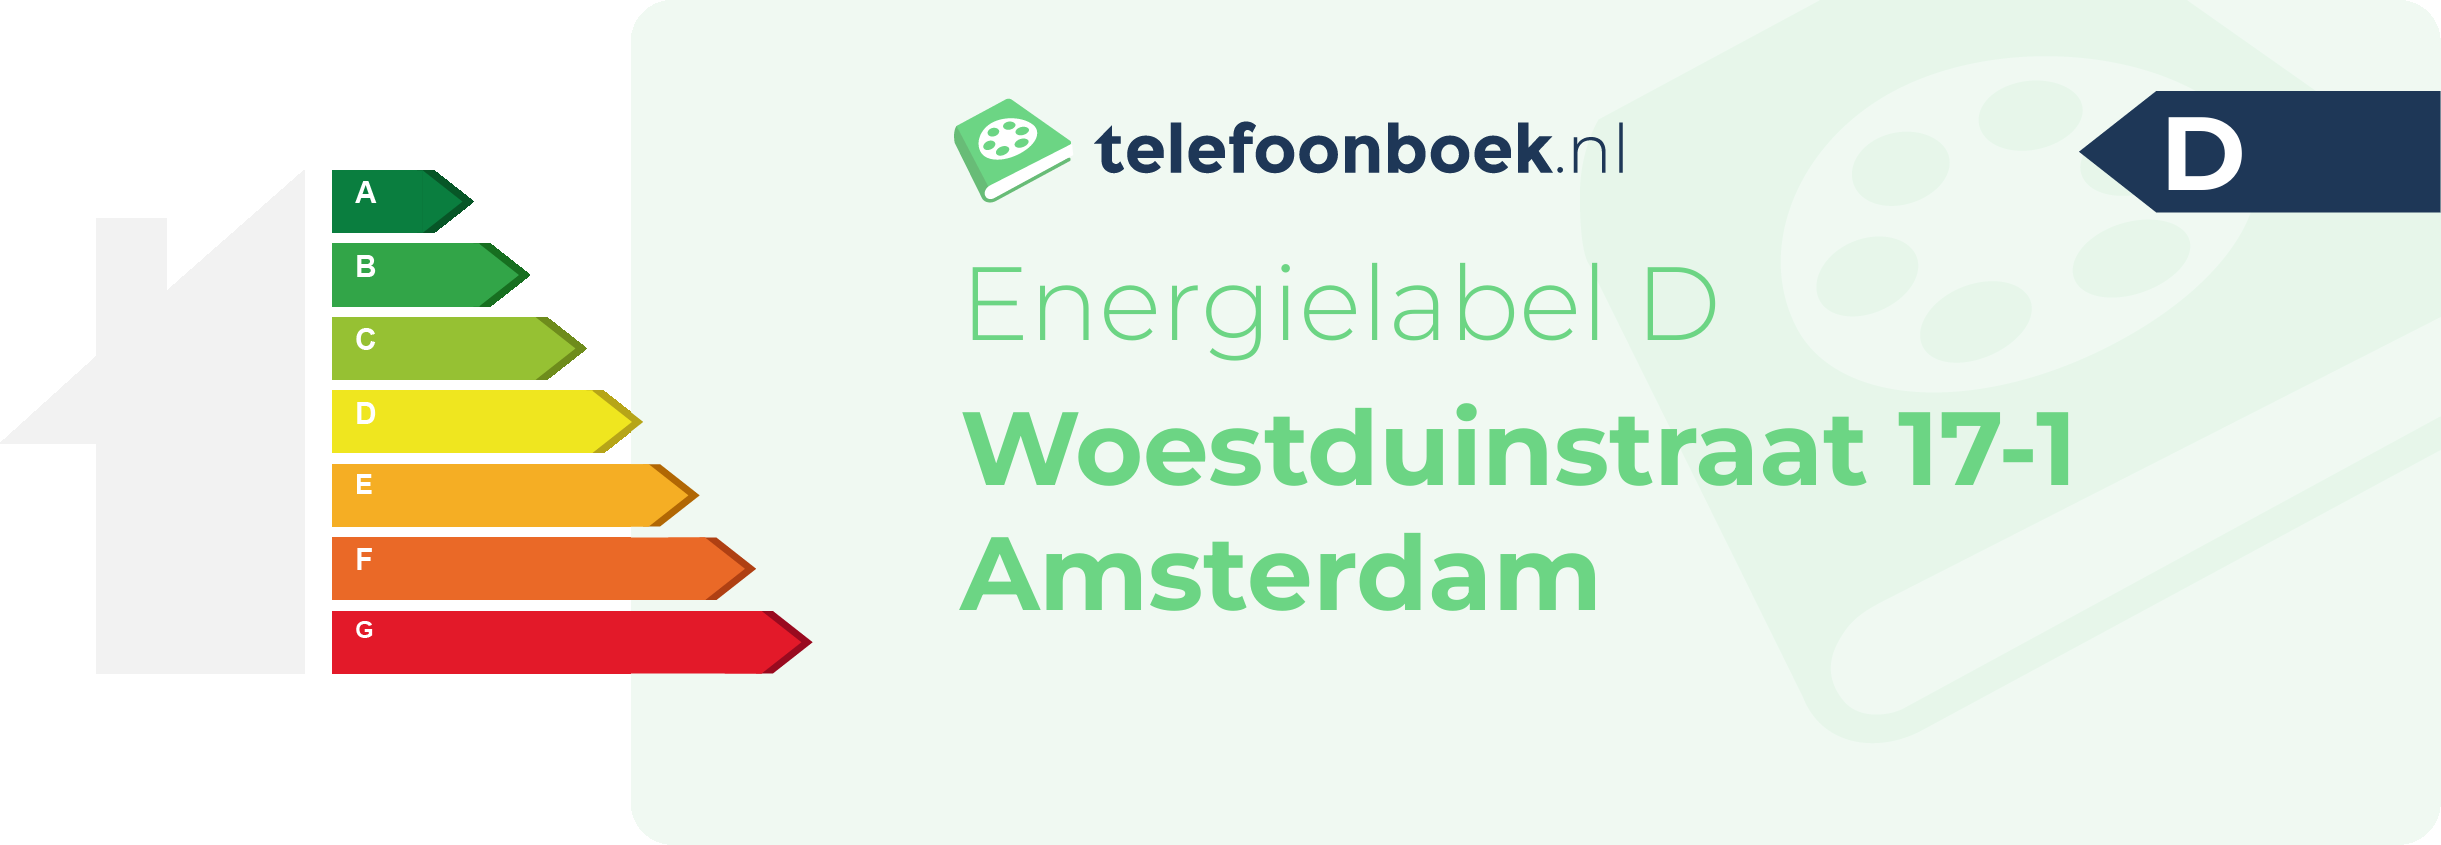 Energielabel Woestduinstraat 17-1 Amsterdam